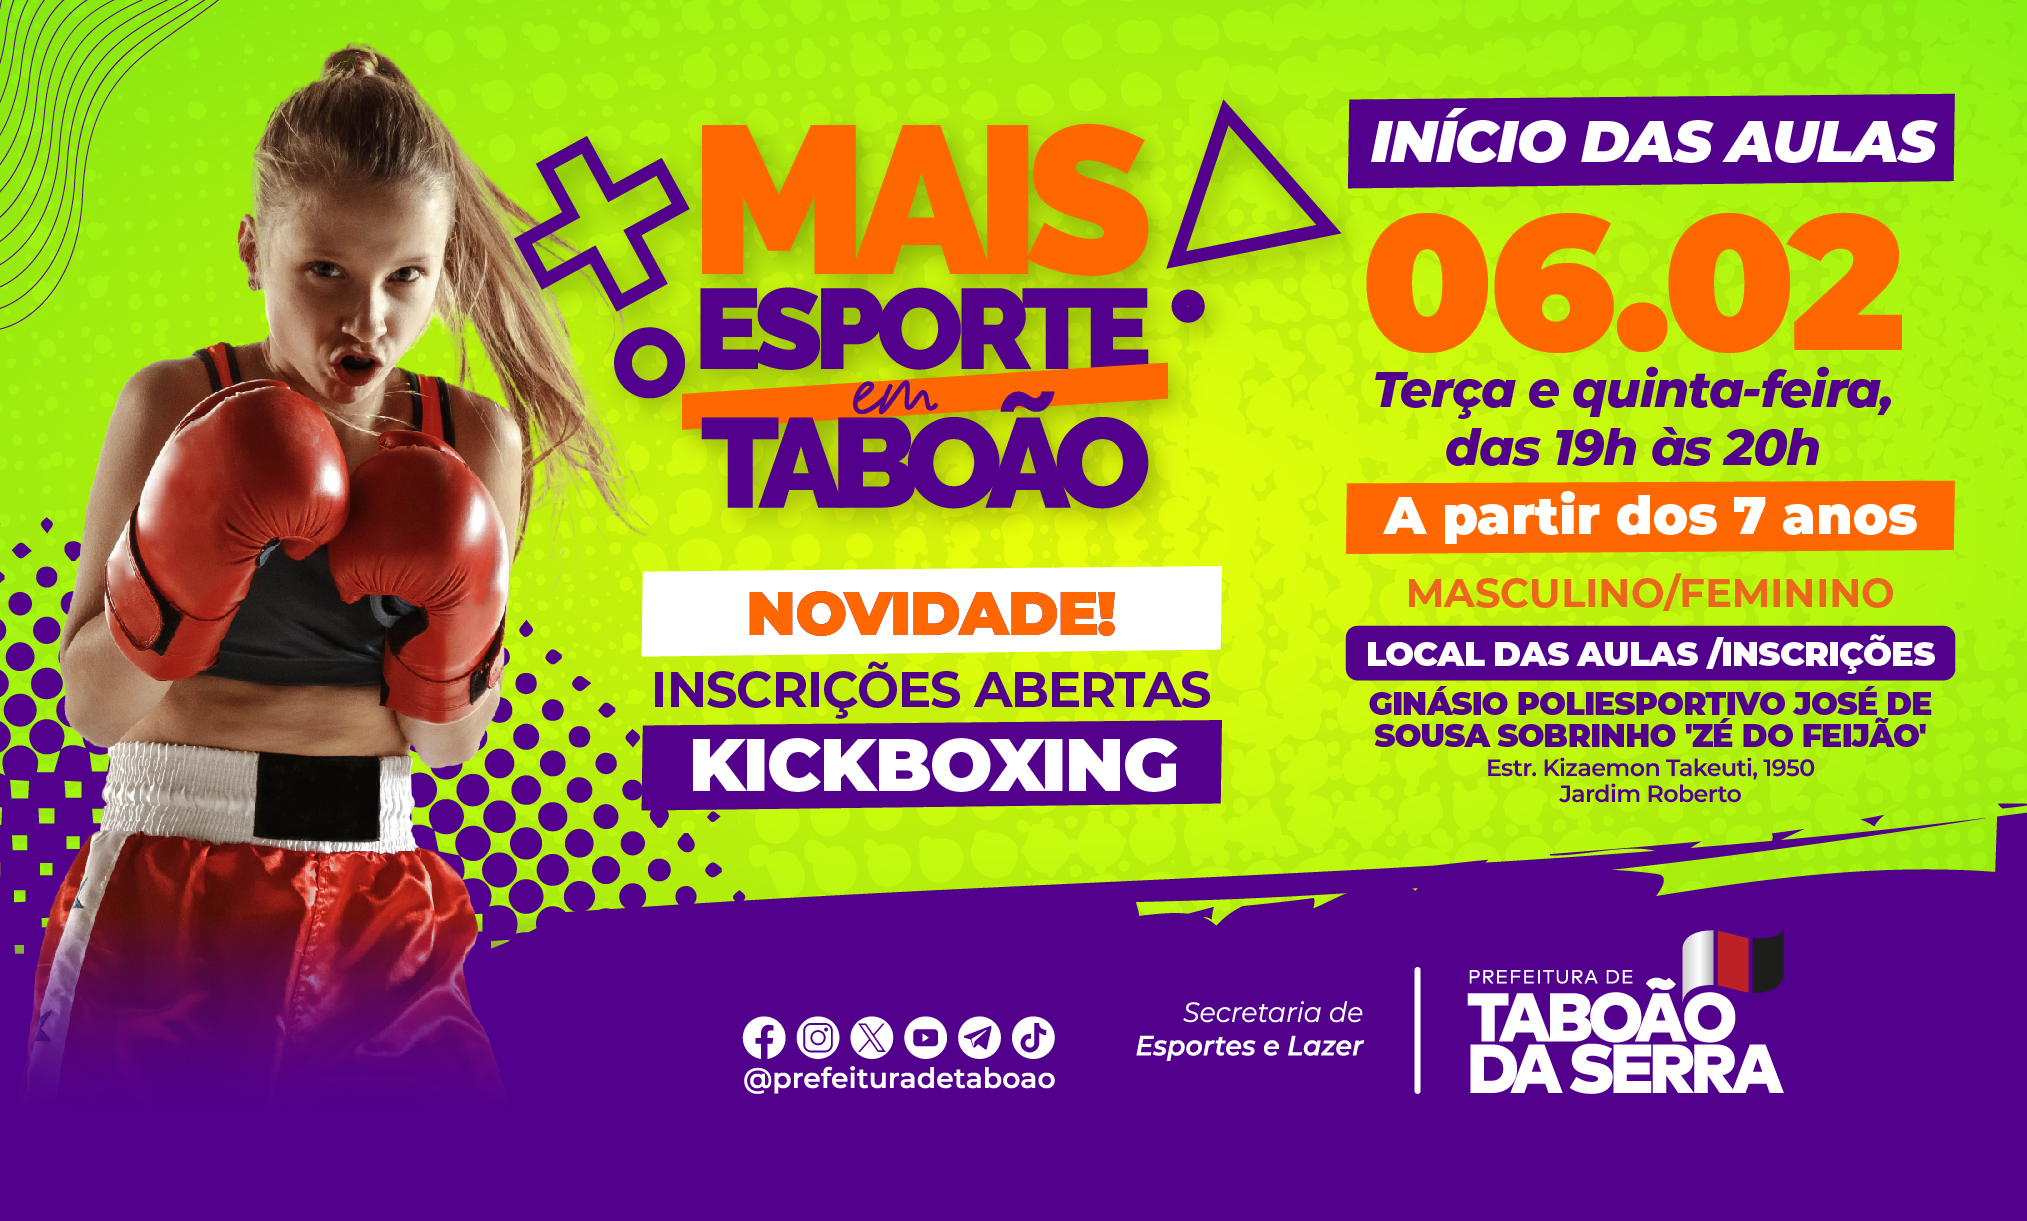 Secretaria de Esportes e Lazer de Taboão da Serra abre inscrições para aula de Kickboxing